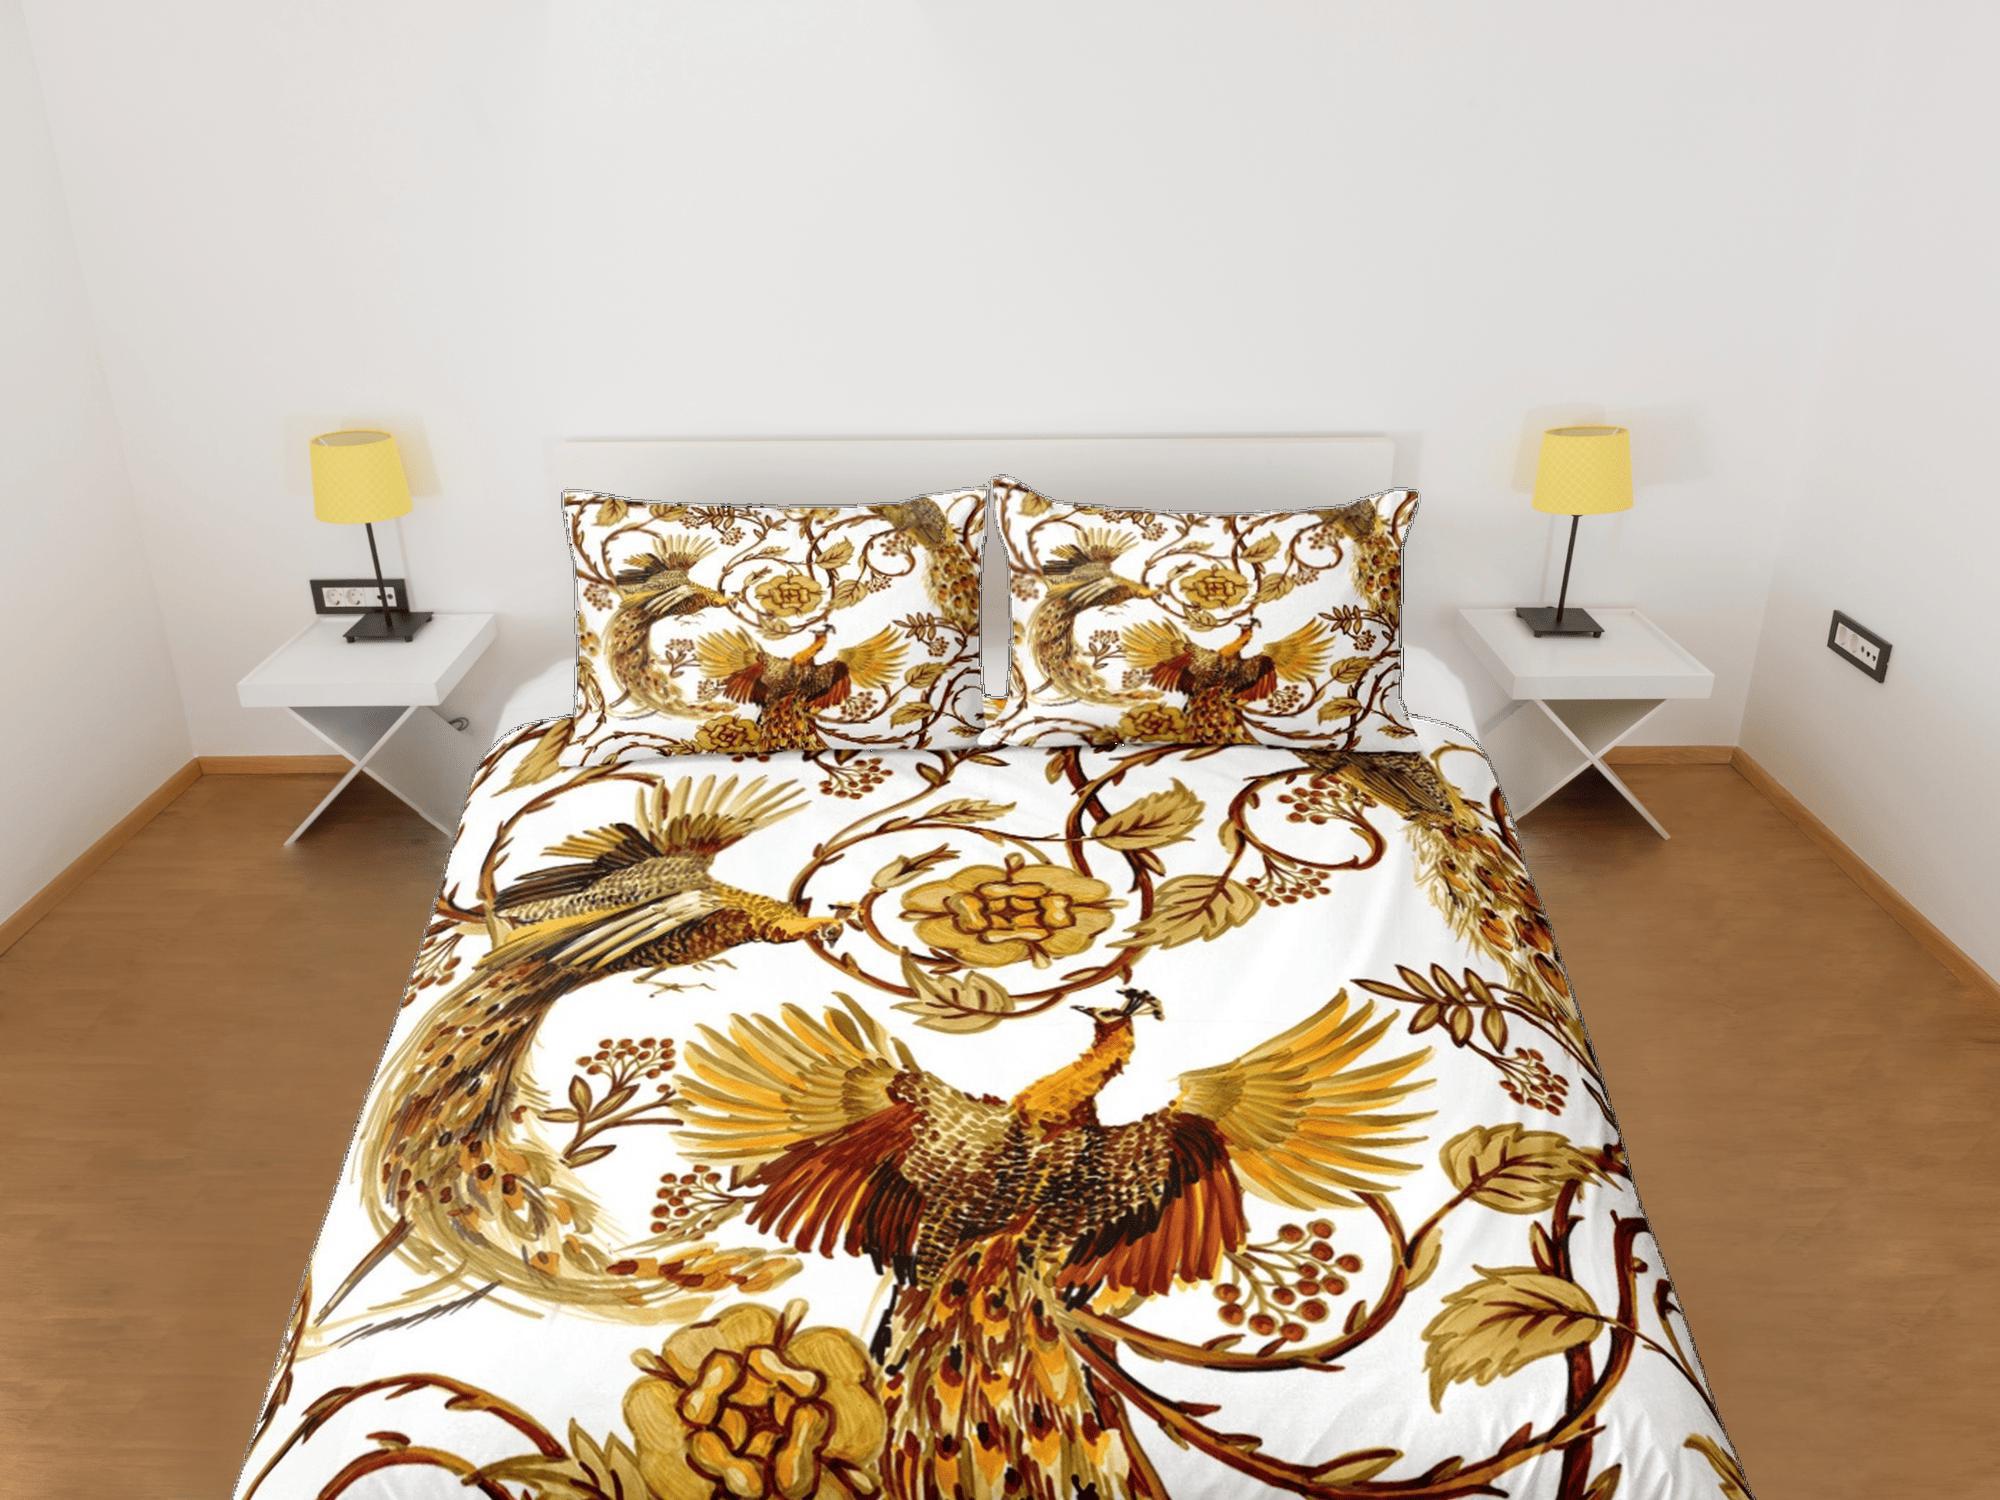 daintyduvet Baroque Golden Bird Luxury Duvet Cover Set Aesthetic Bedding Set Full Victorian Decor